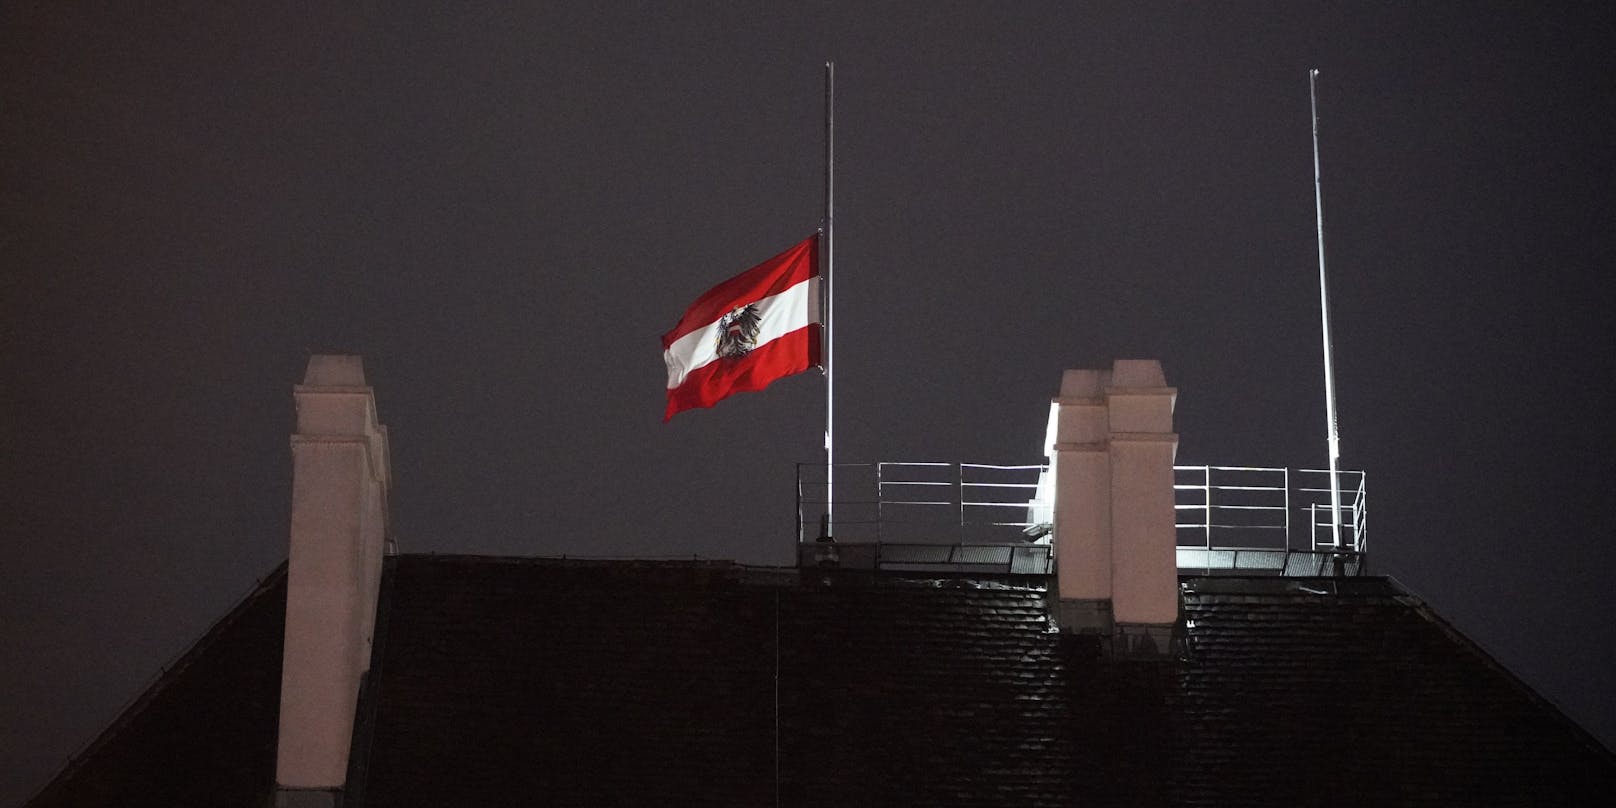 Auf Anordnung des Bundespräsidenten wurde die österreichische Fahne auf dem Dach der Wiener Hofburg auf halbmast gesetzt als sichtbares Zeichen der Anteilnahme.